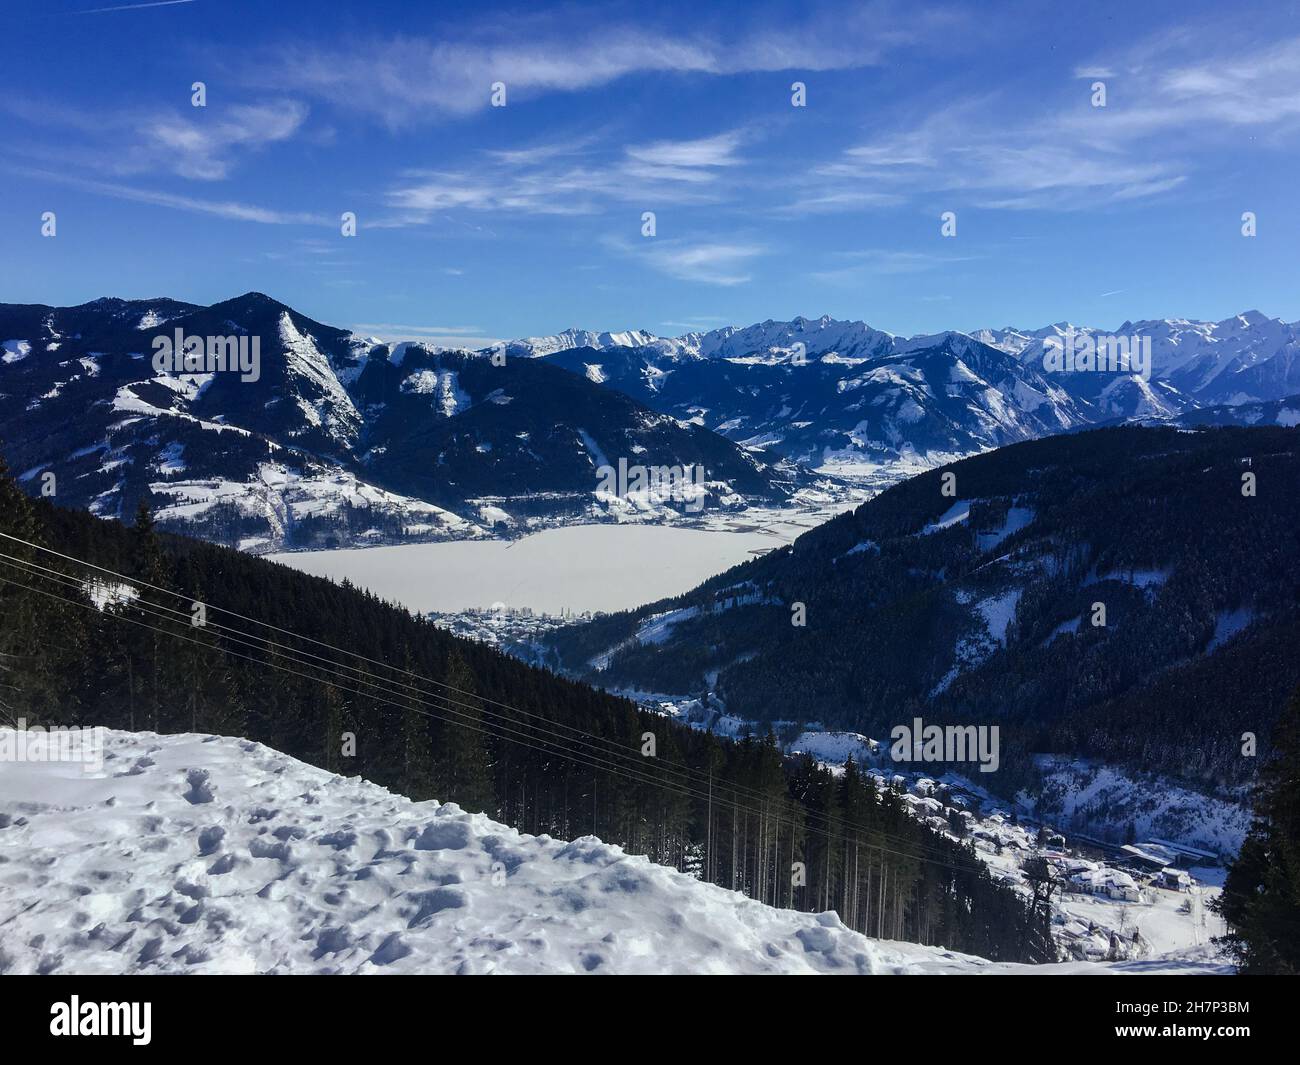 Apls, mountain skiing in Austria Stock Photo